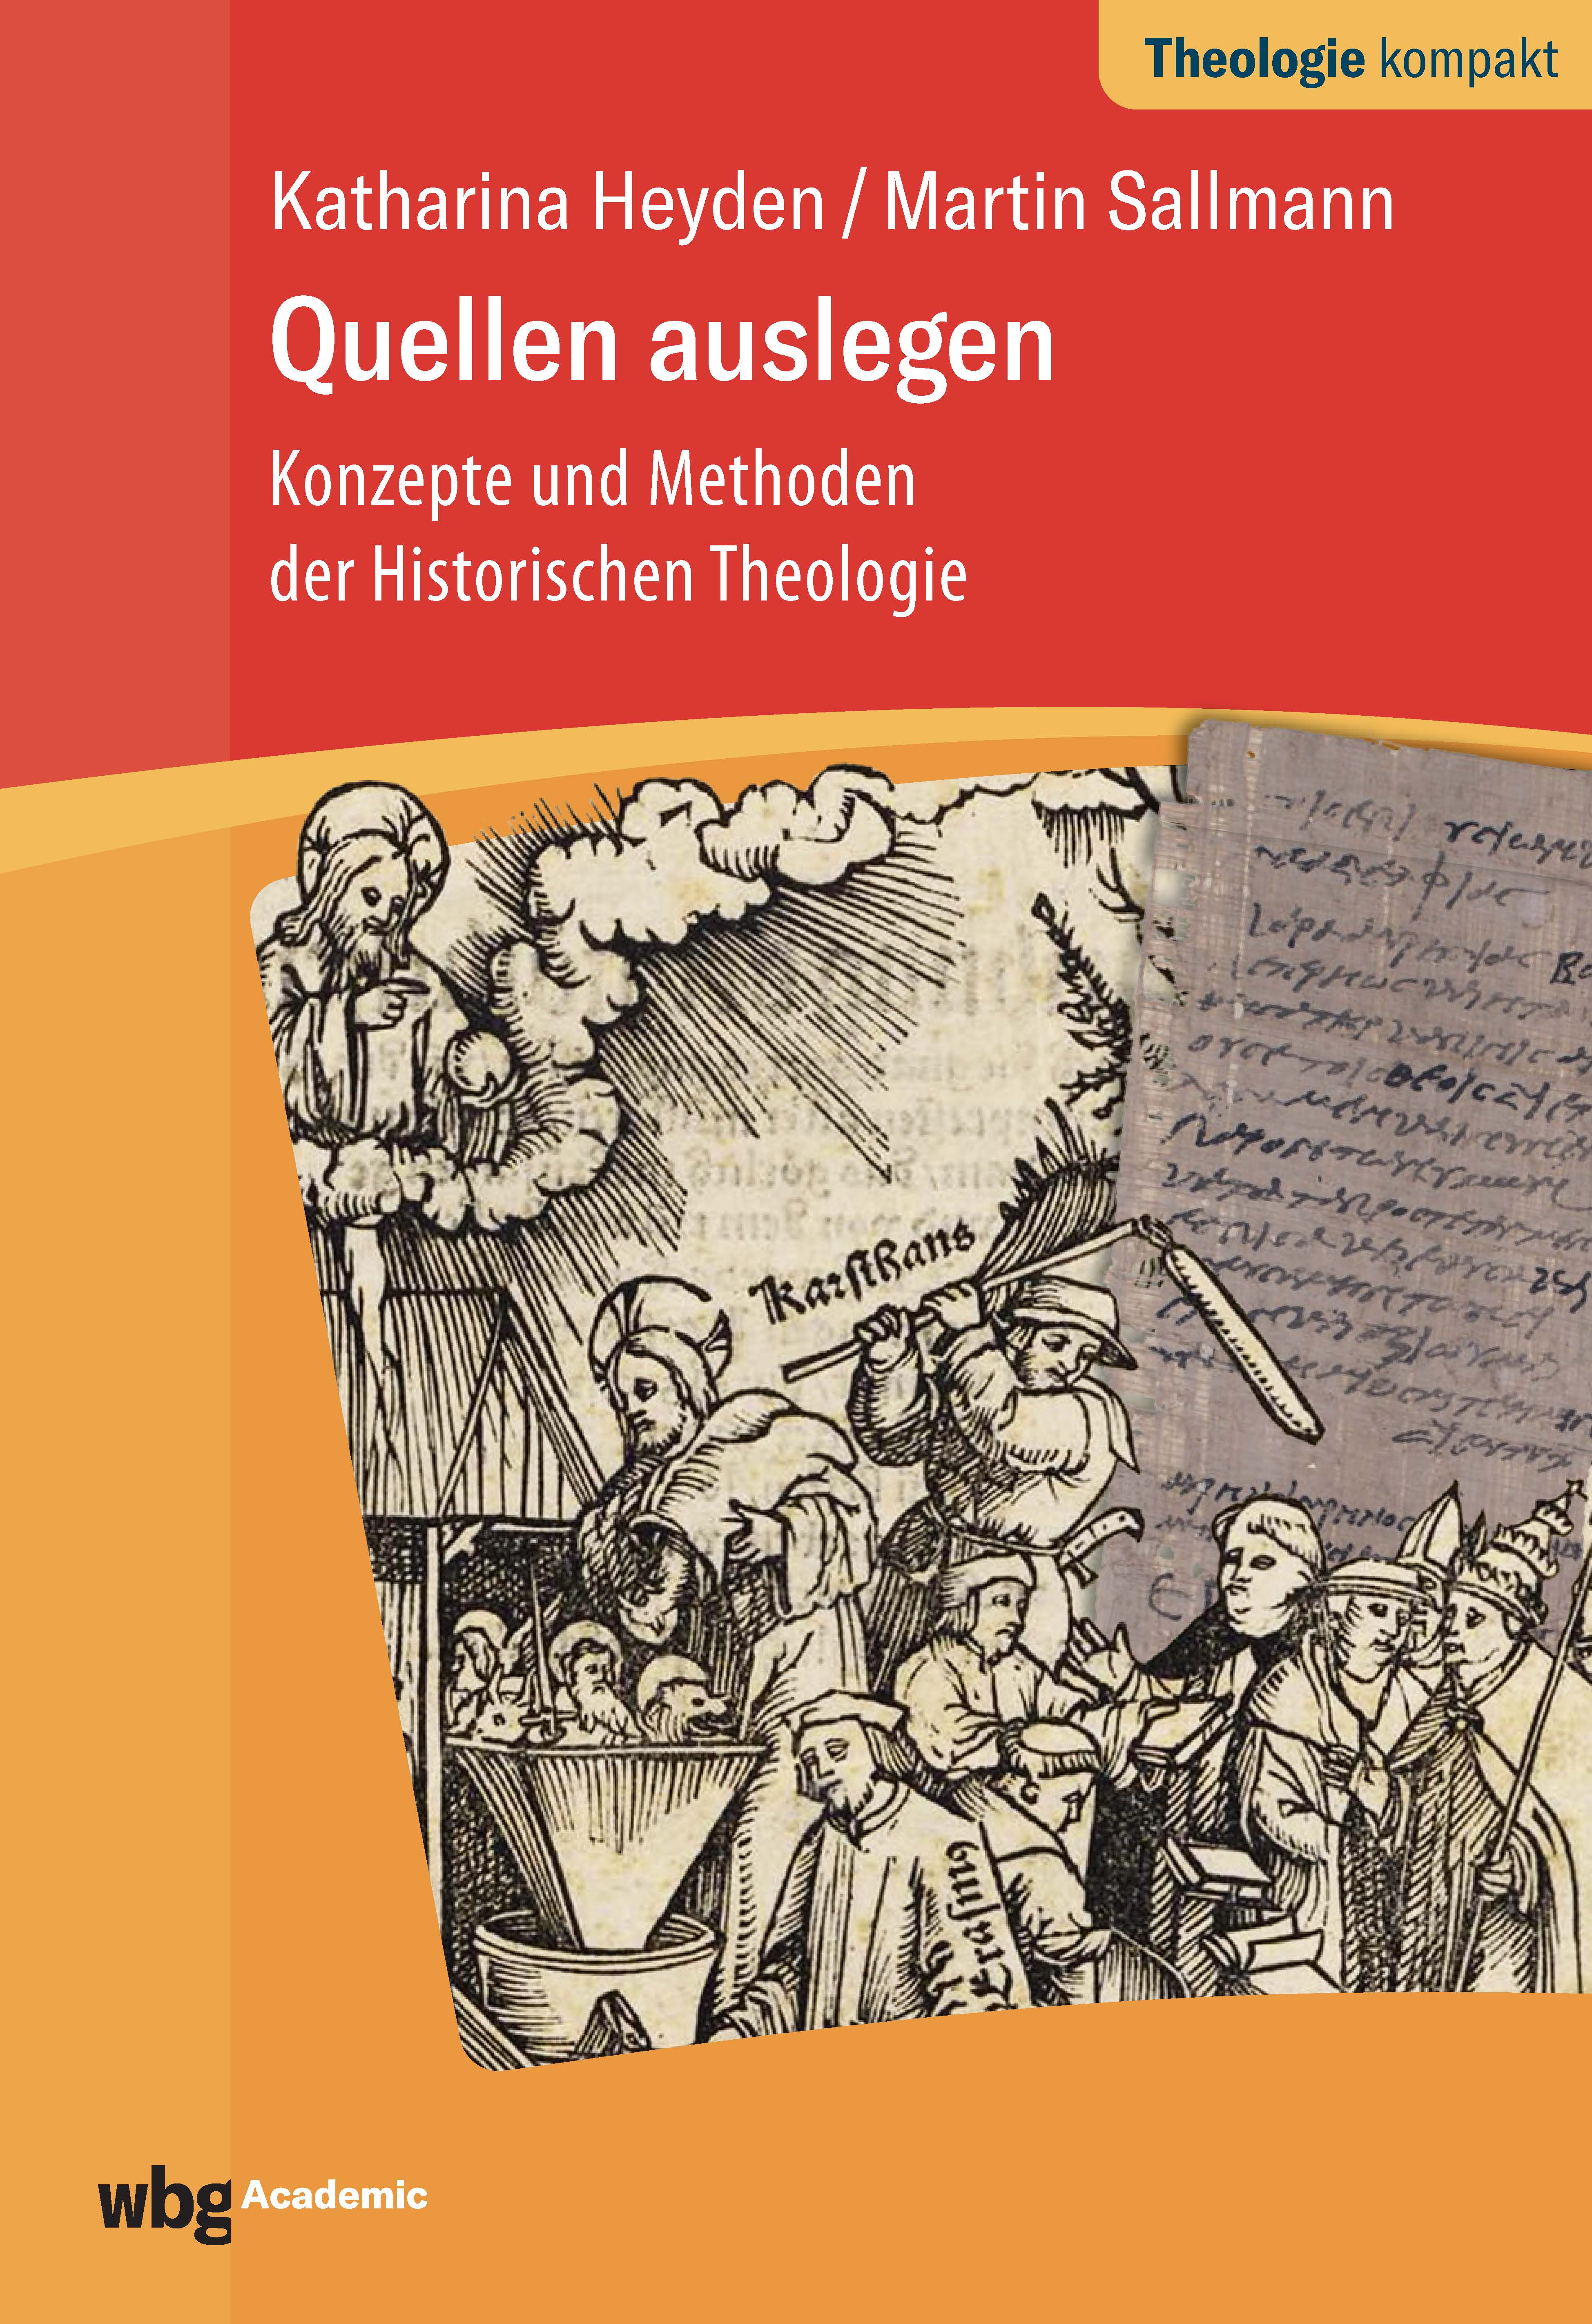 Bild des Buches Konzepte und Methoden der Historischen Theologie, Katharina Heyden und Martin Sallmann